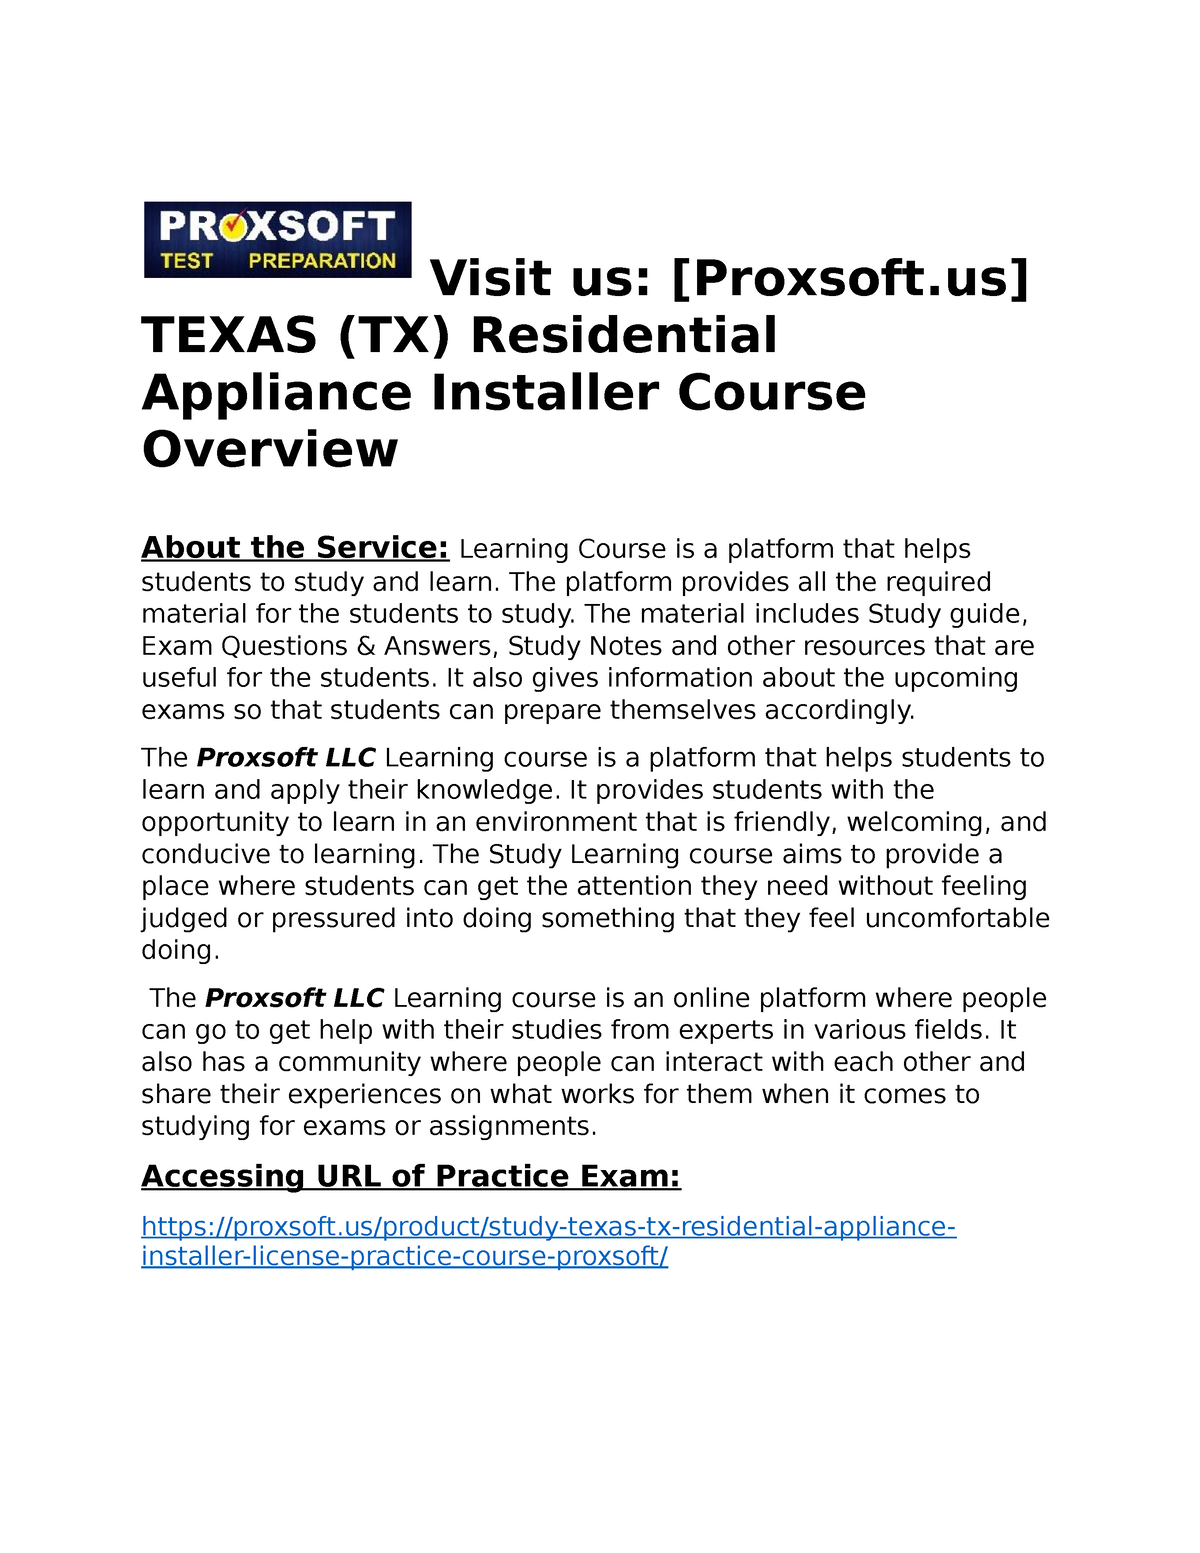 instal Massachusetts residential appliance installer license prep class